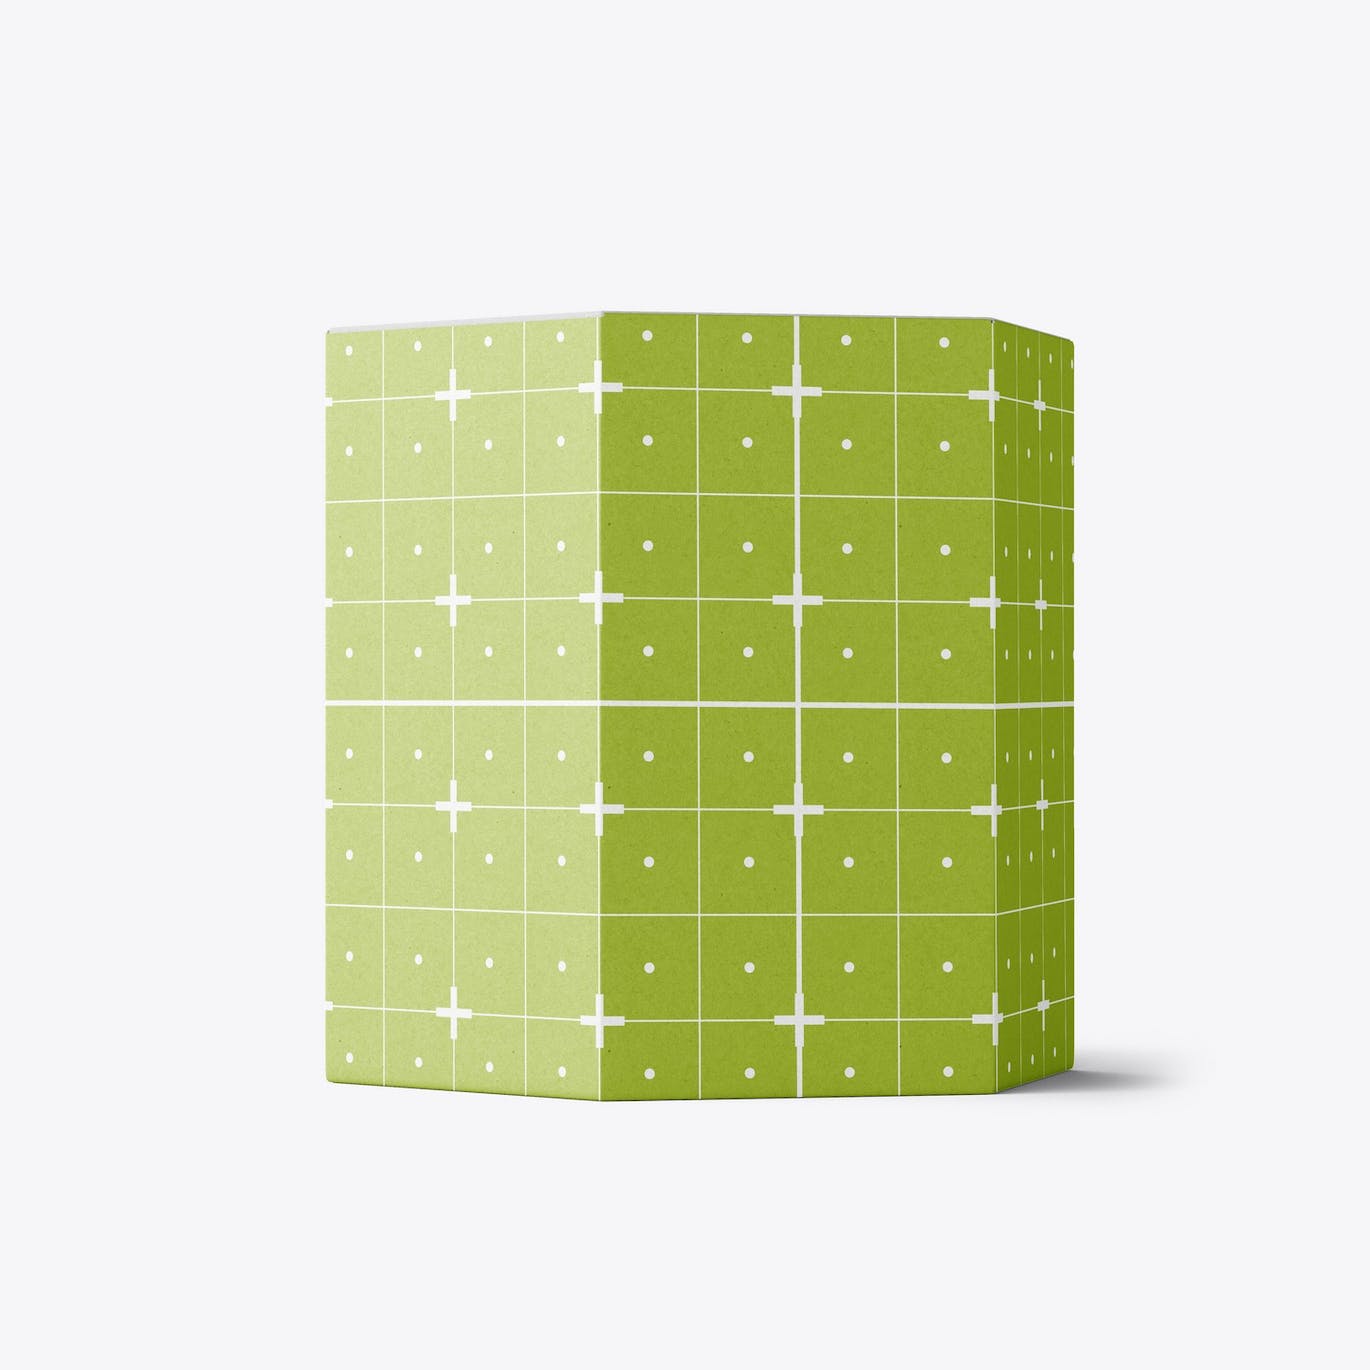 六边形长方体纸盒包装设计样机 Hexagonal Box Mockup 样机素材 第5张